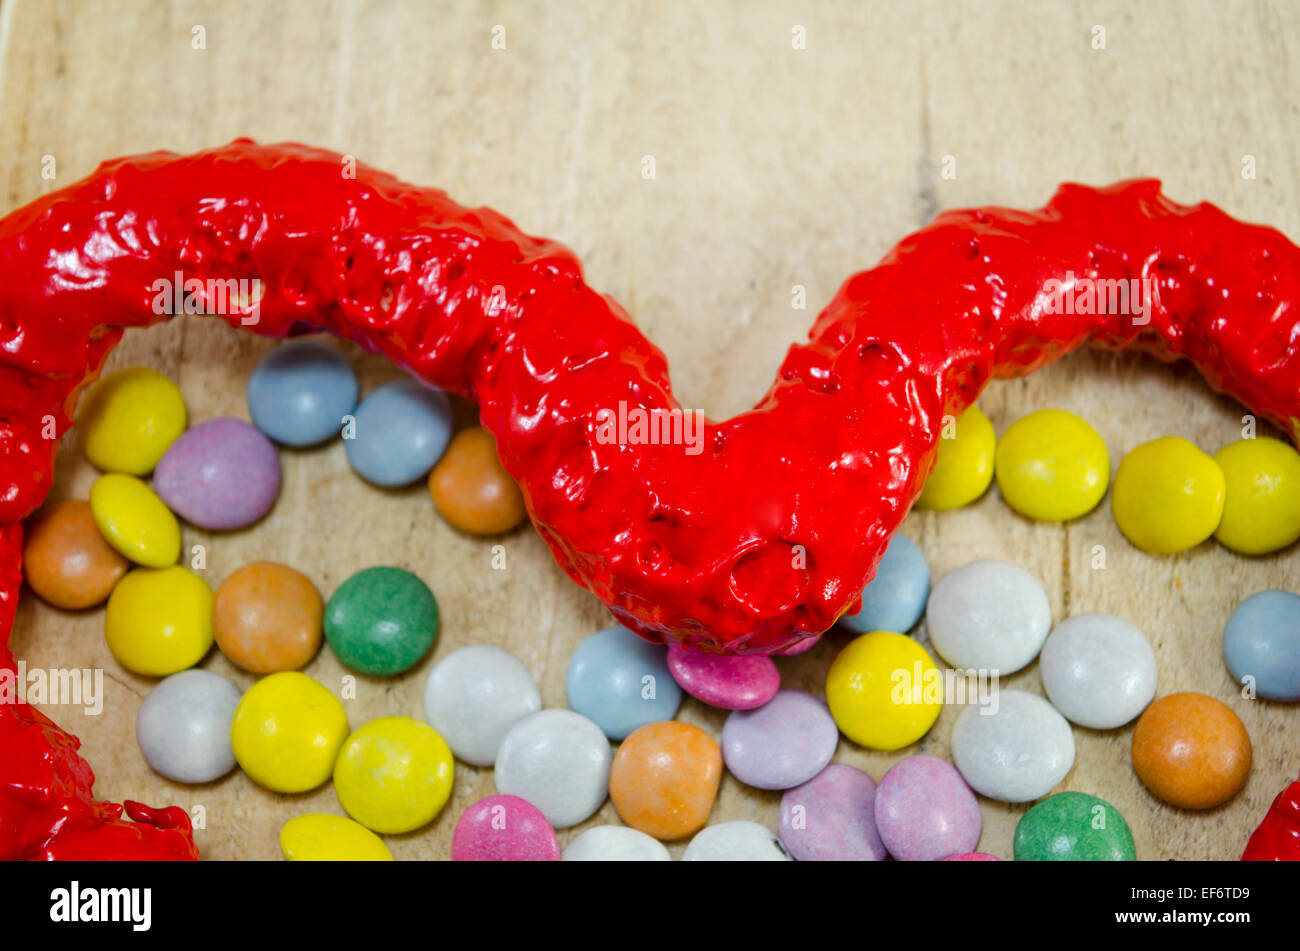 Bonbons coeur rouge et bombons bonbons colorés sur une table en bois, gros plan Banque D'Images